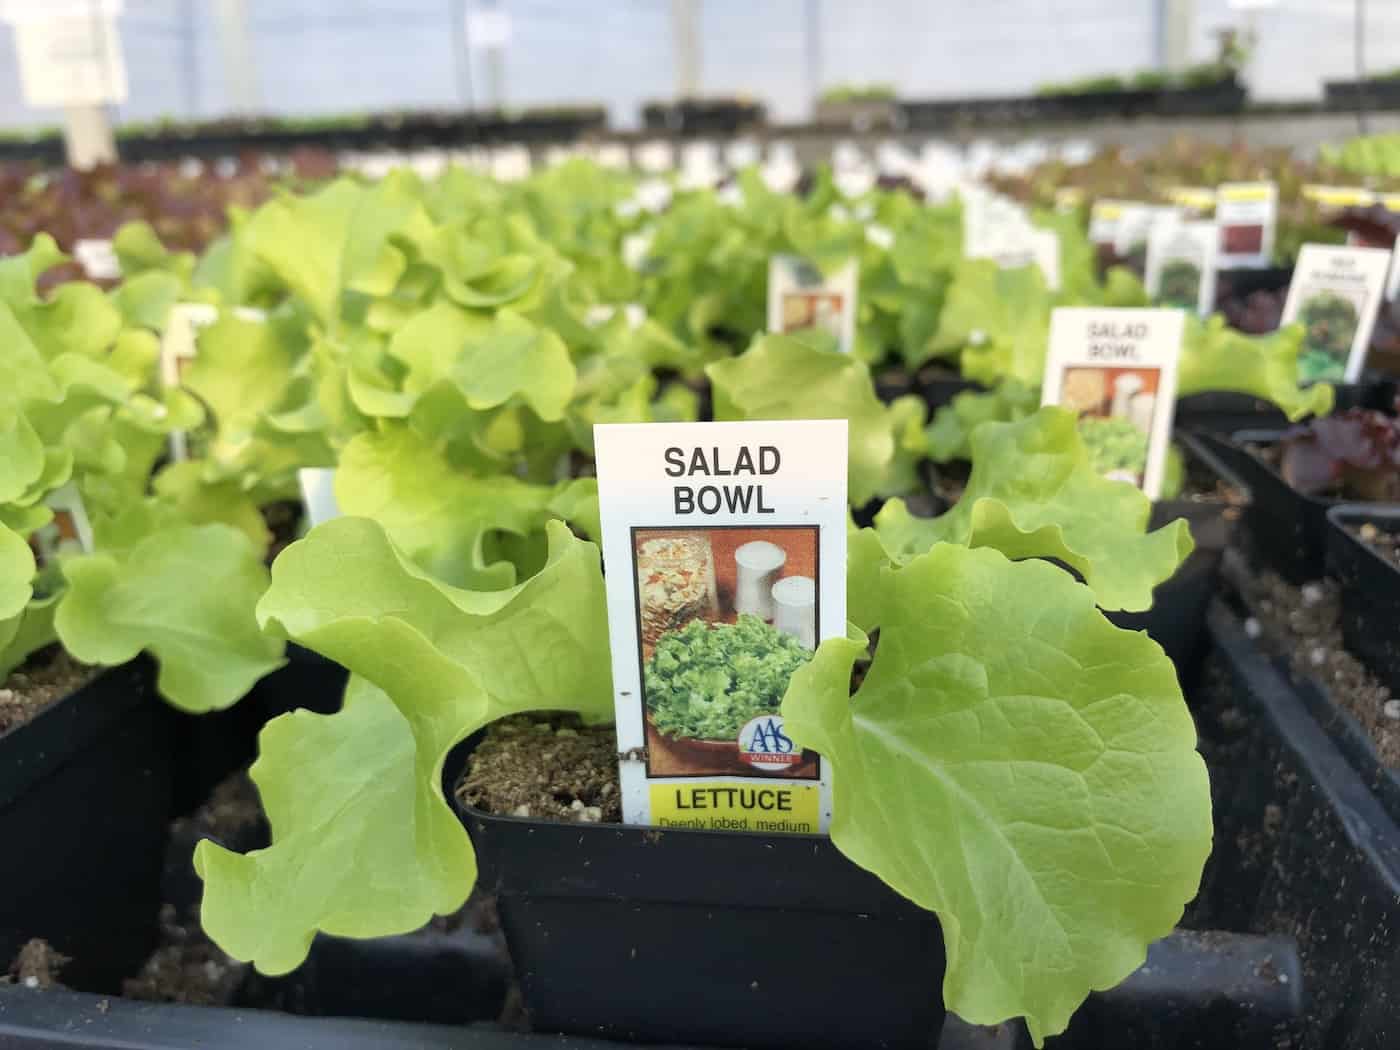 Seedling lettuce